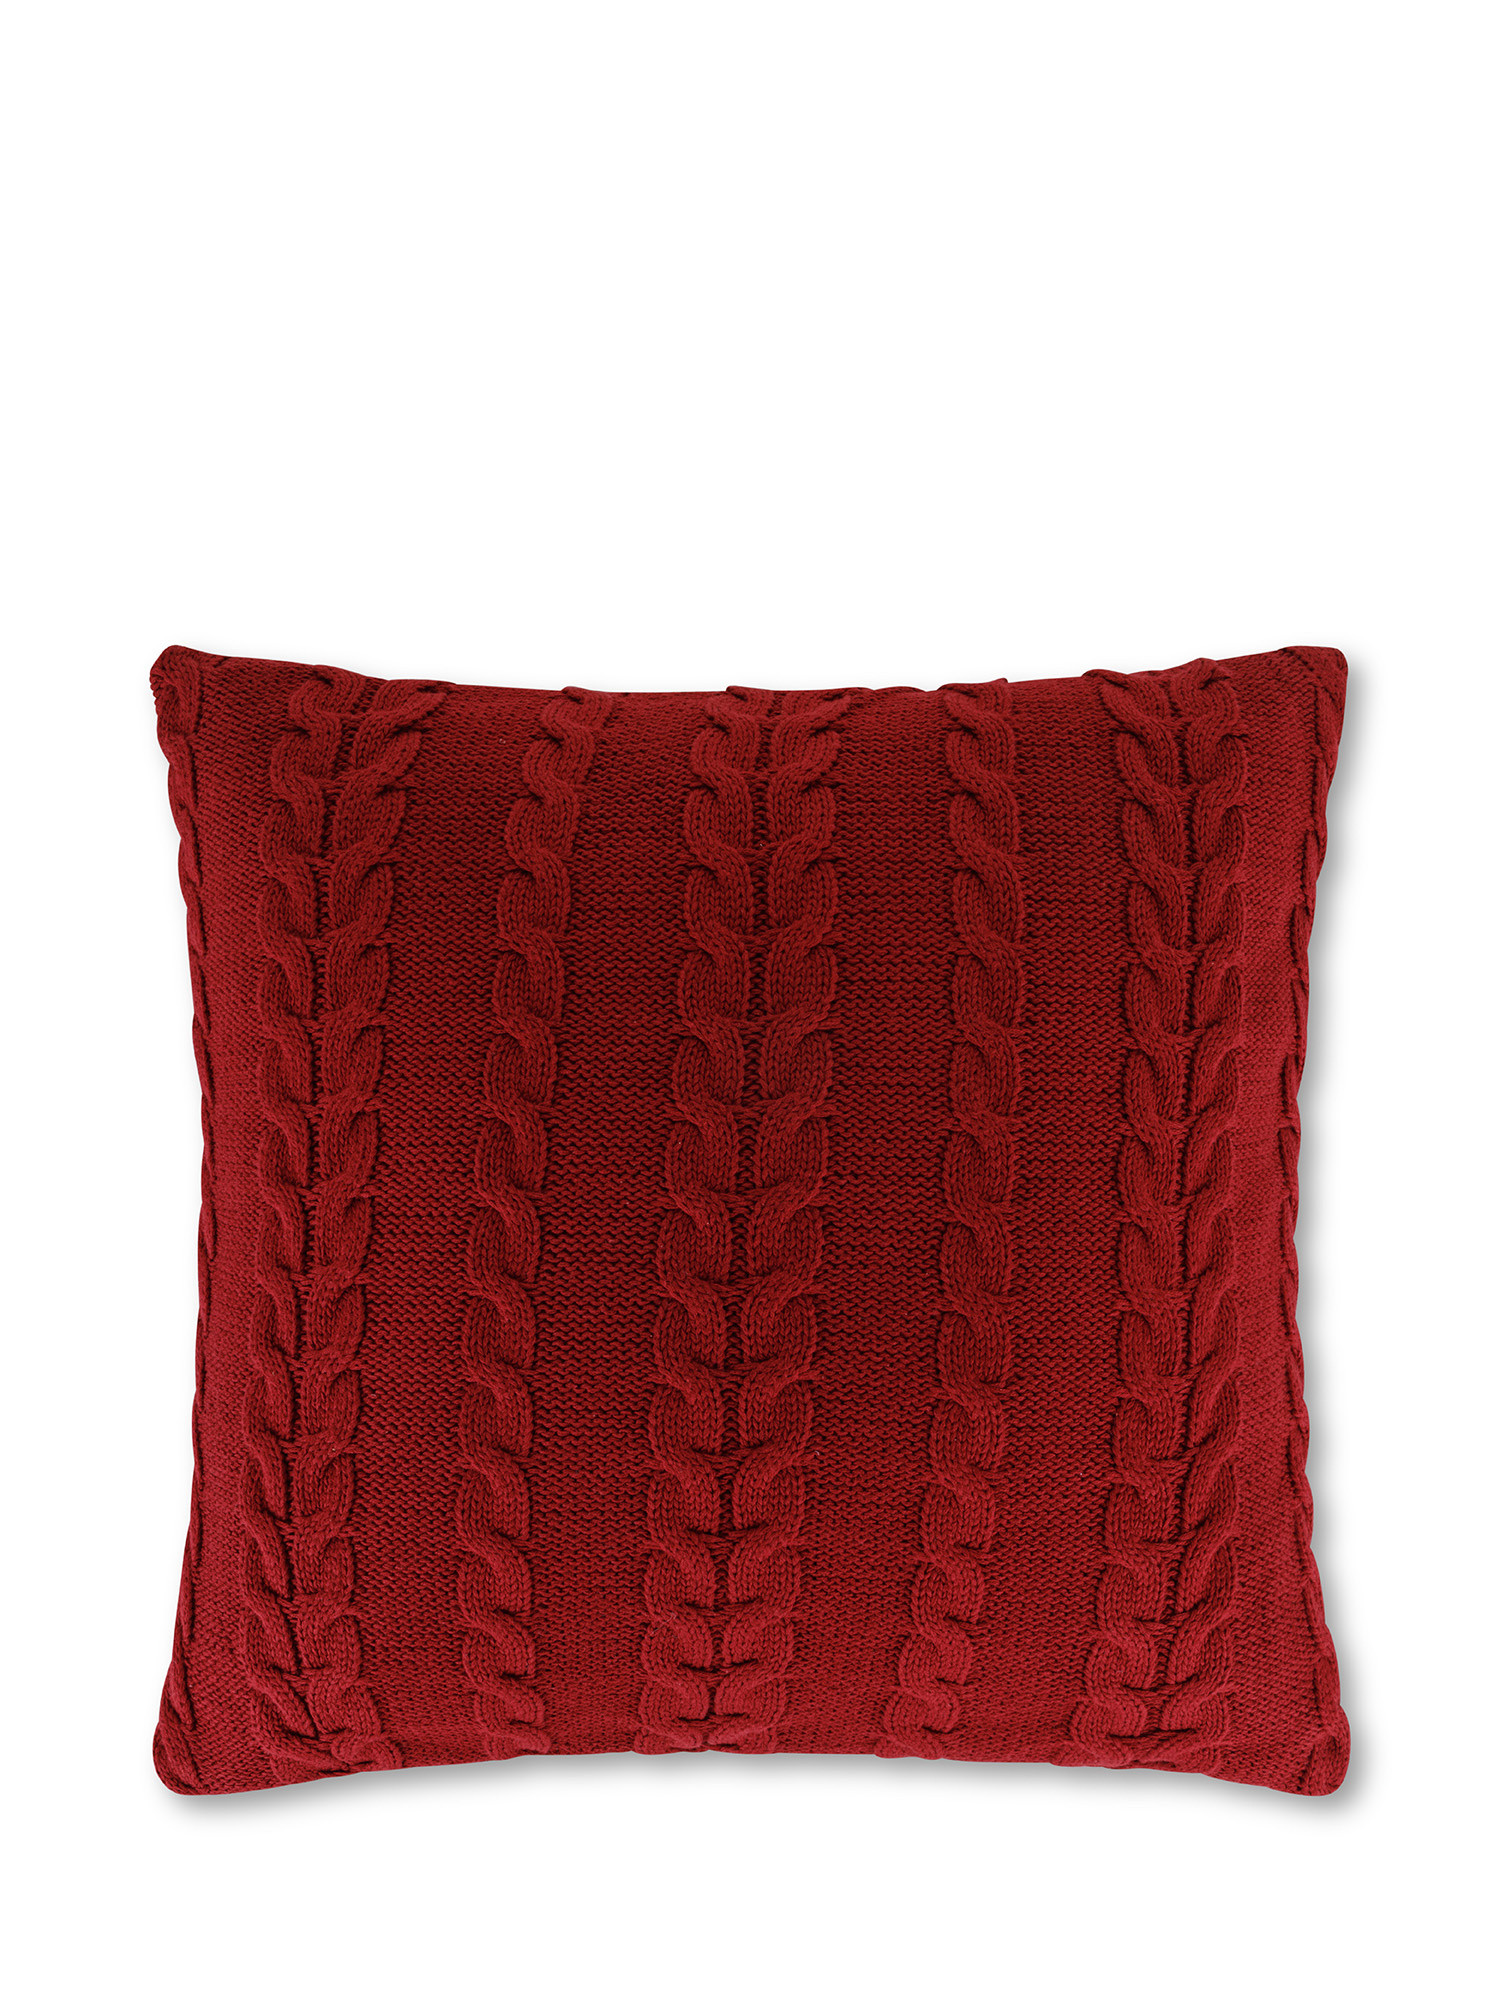 Cuscino in maglia motivo trecce 45x45 cm, Rosso, large image number 0